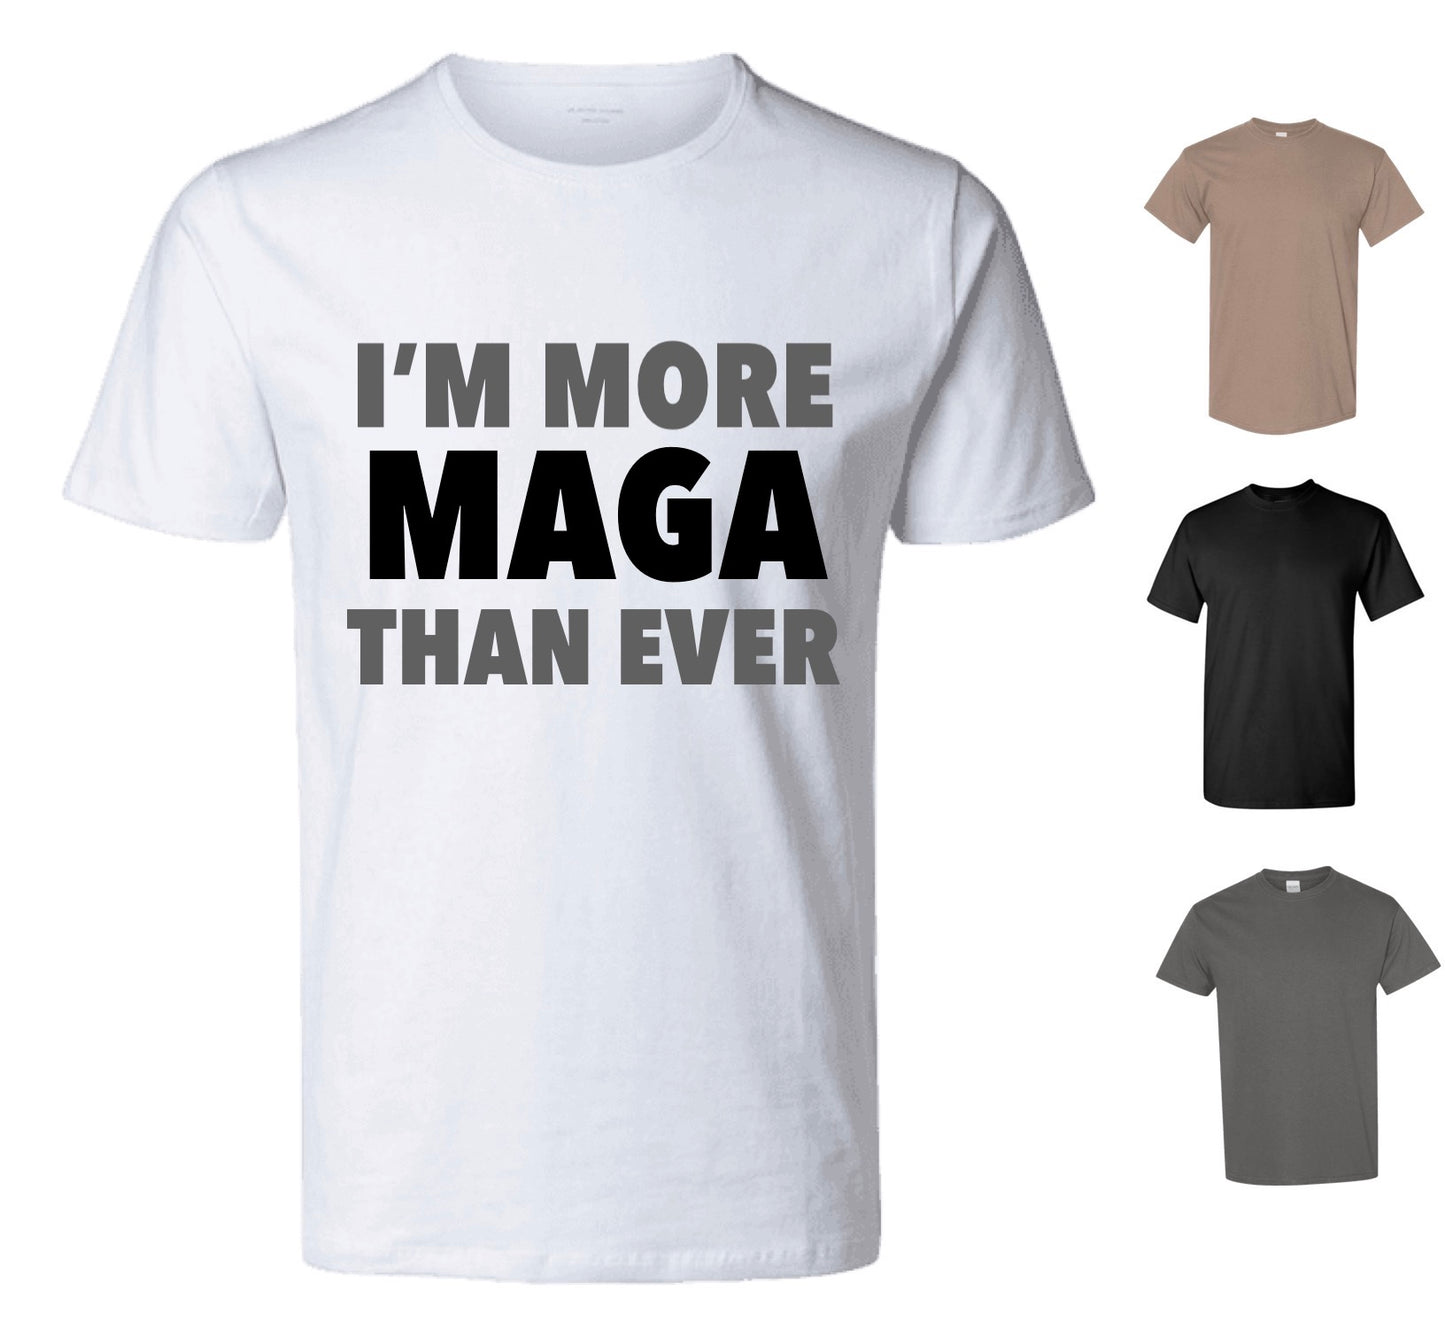 I'm More MAGA Than Ever Shirt — Free Shipping!